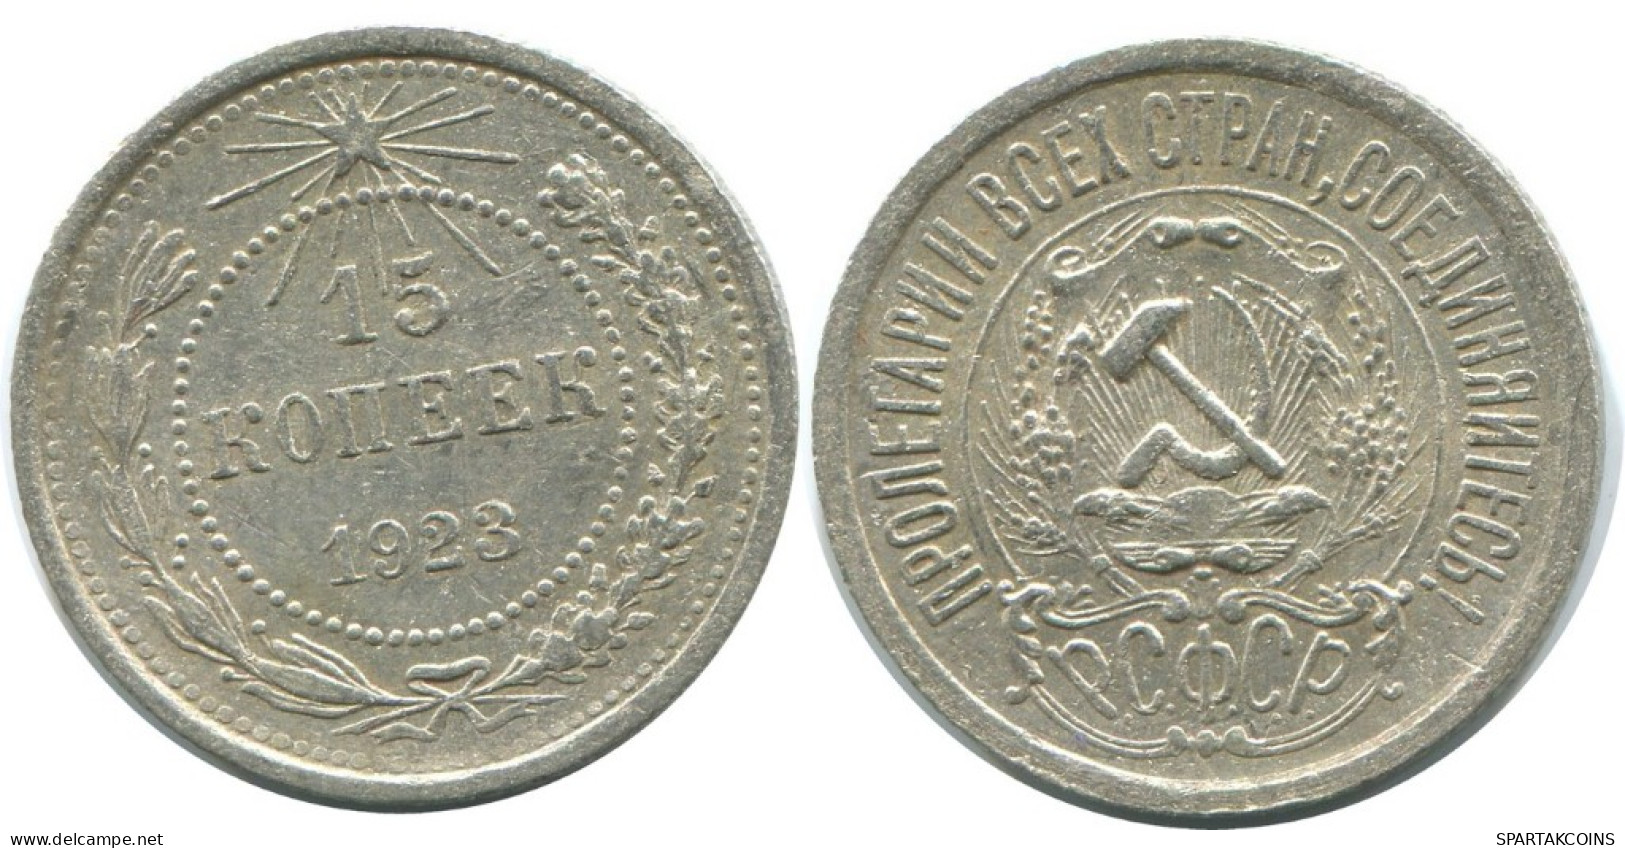 15 KOPEKS 1923 RUSSLAND RUSSIA RSFSR SILBER Münze HIGH GRADE #AF047.4.D.A - Russia